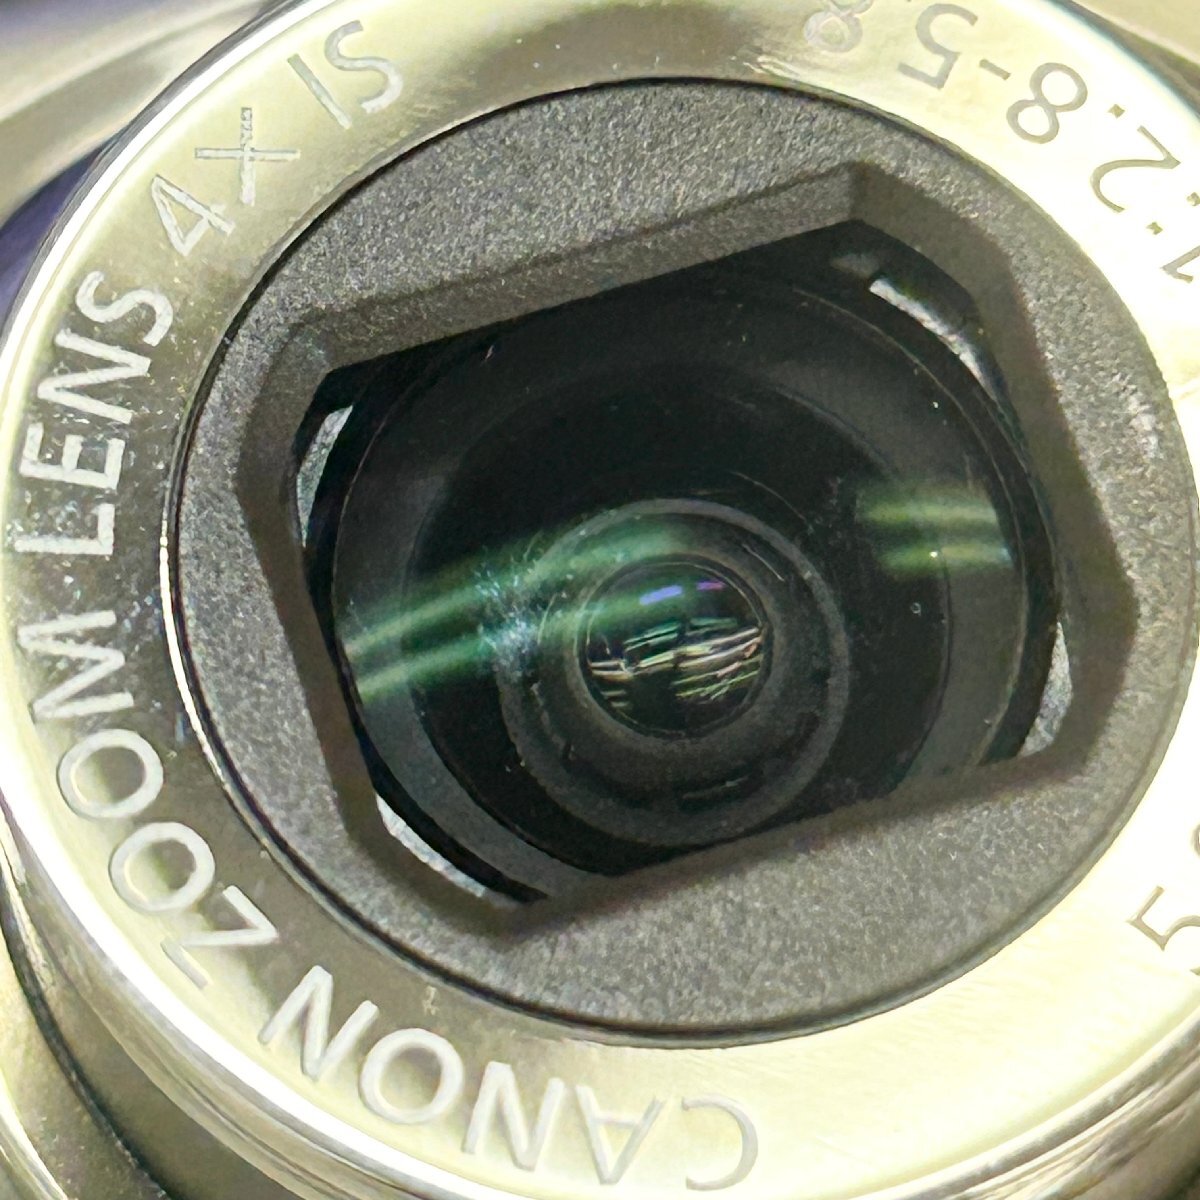 通電OK◆キャノン canon◆IXY DIGITAL 920 IS PC1308 ZOOM LENS 4X IS 5.0-20.0mm 1:2.8-5.8 デジタル カメラ 箱/バッテリー付 動作未確認_薄汚れ、小さな汚れ付着。